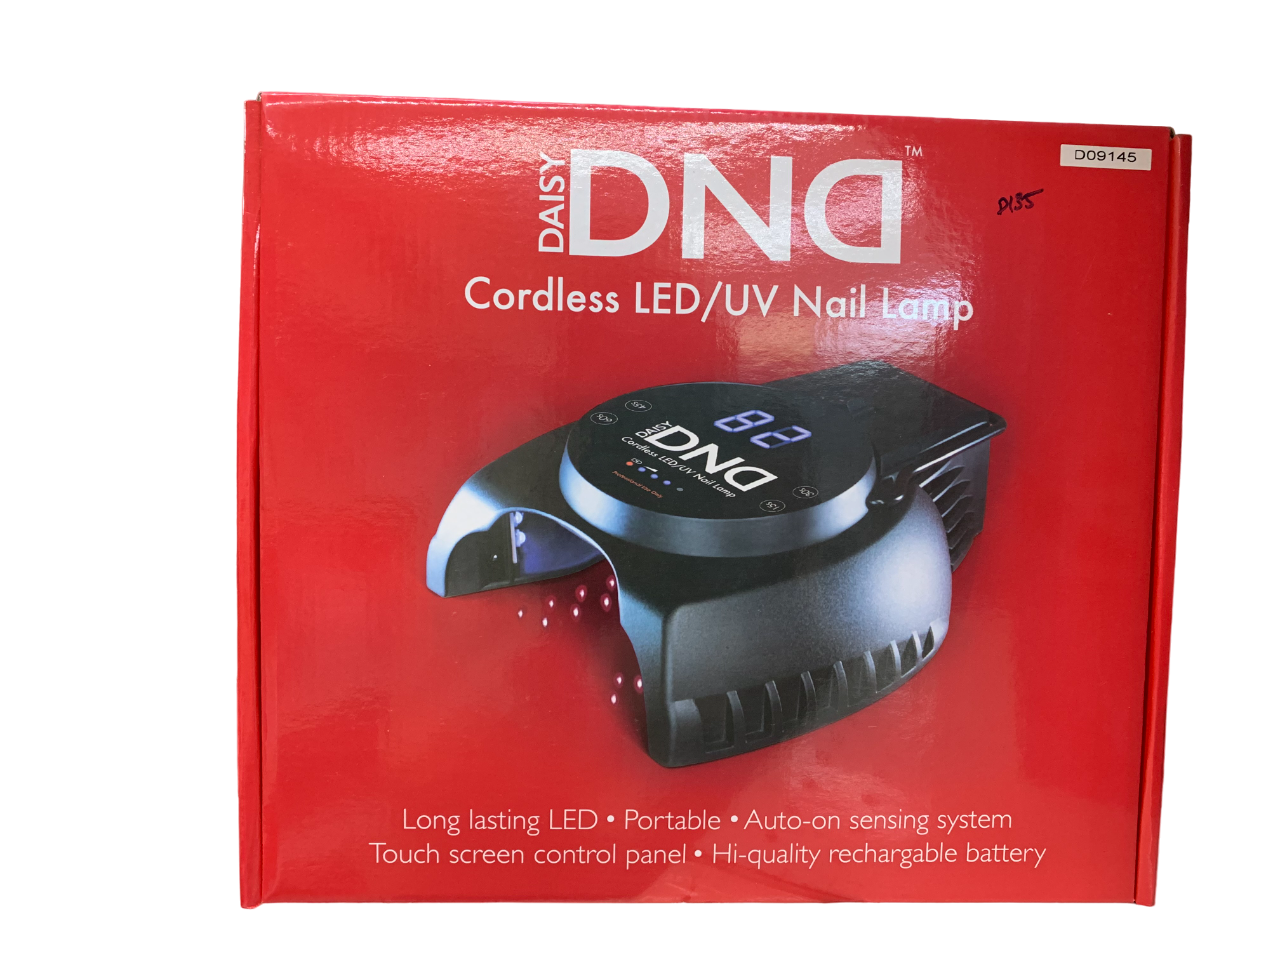 DND Cordless LED UV Nail Lamp